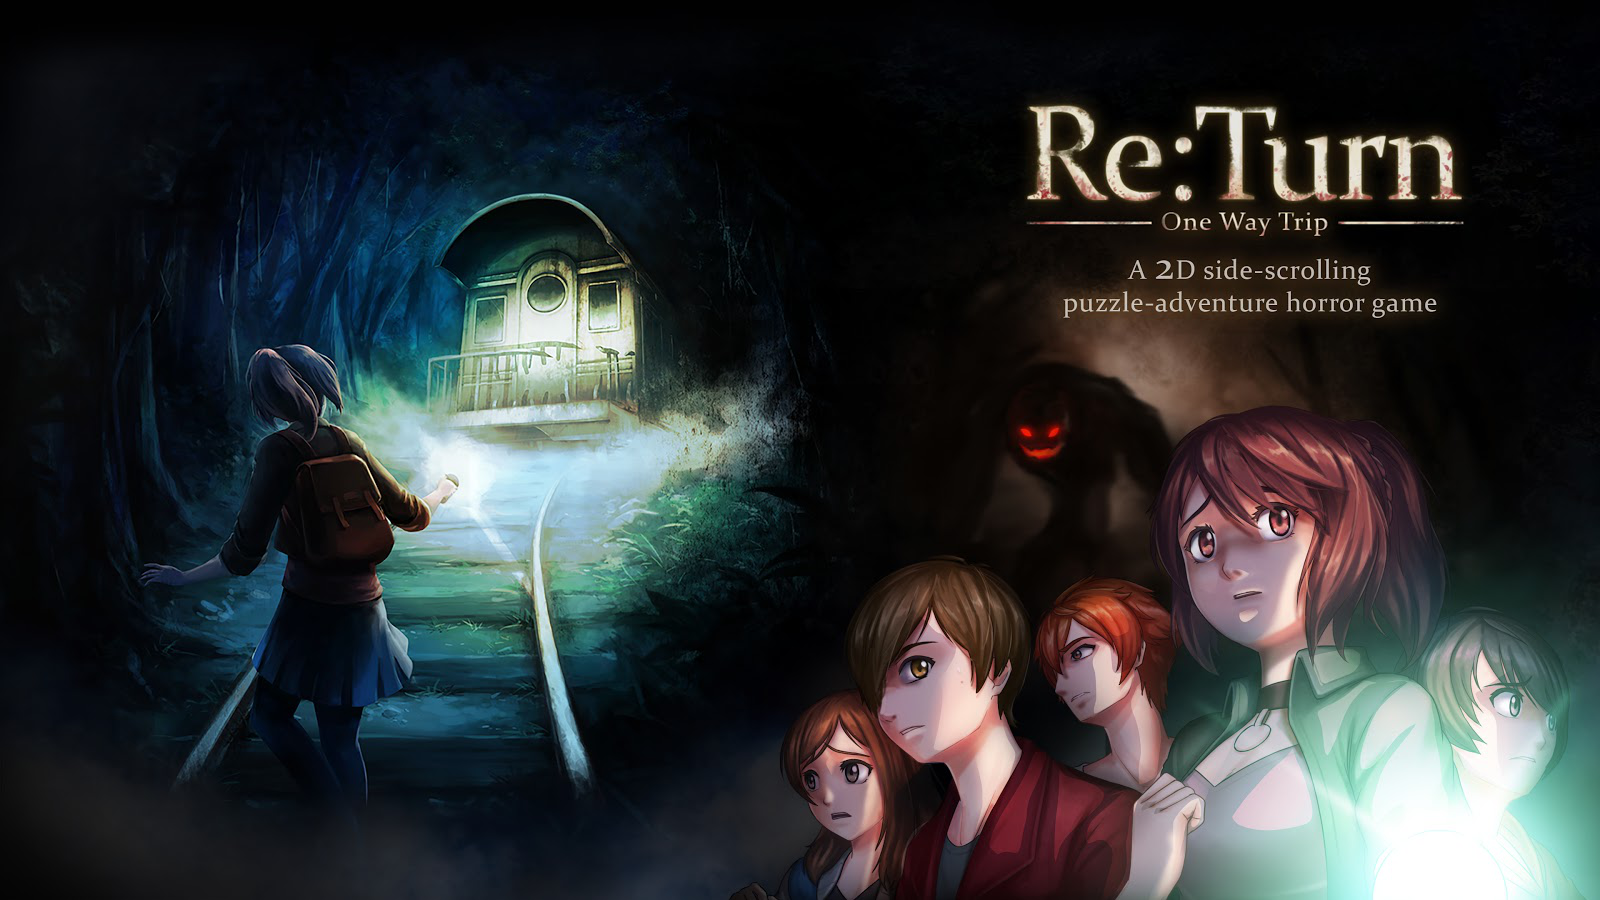 Re：Turn-單程旅行將在2020年10月14日在 PC和Xbox One端推發布 